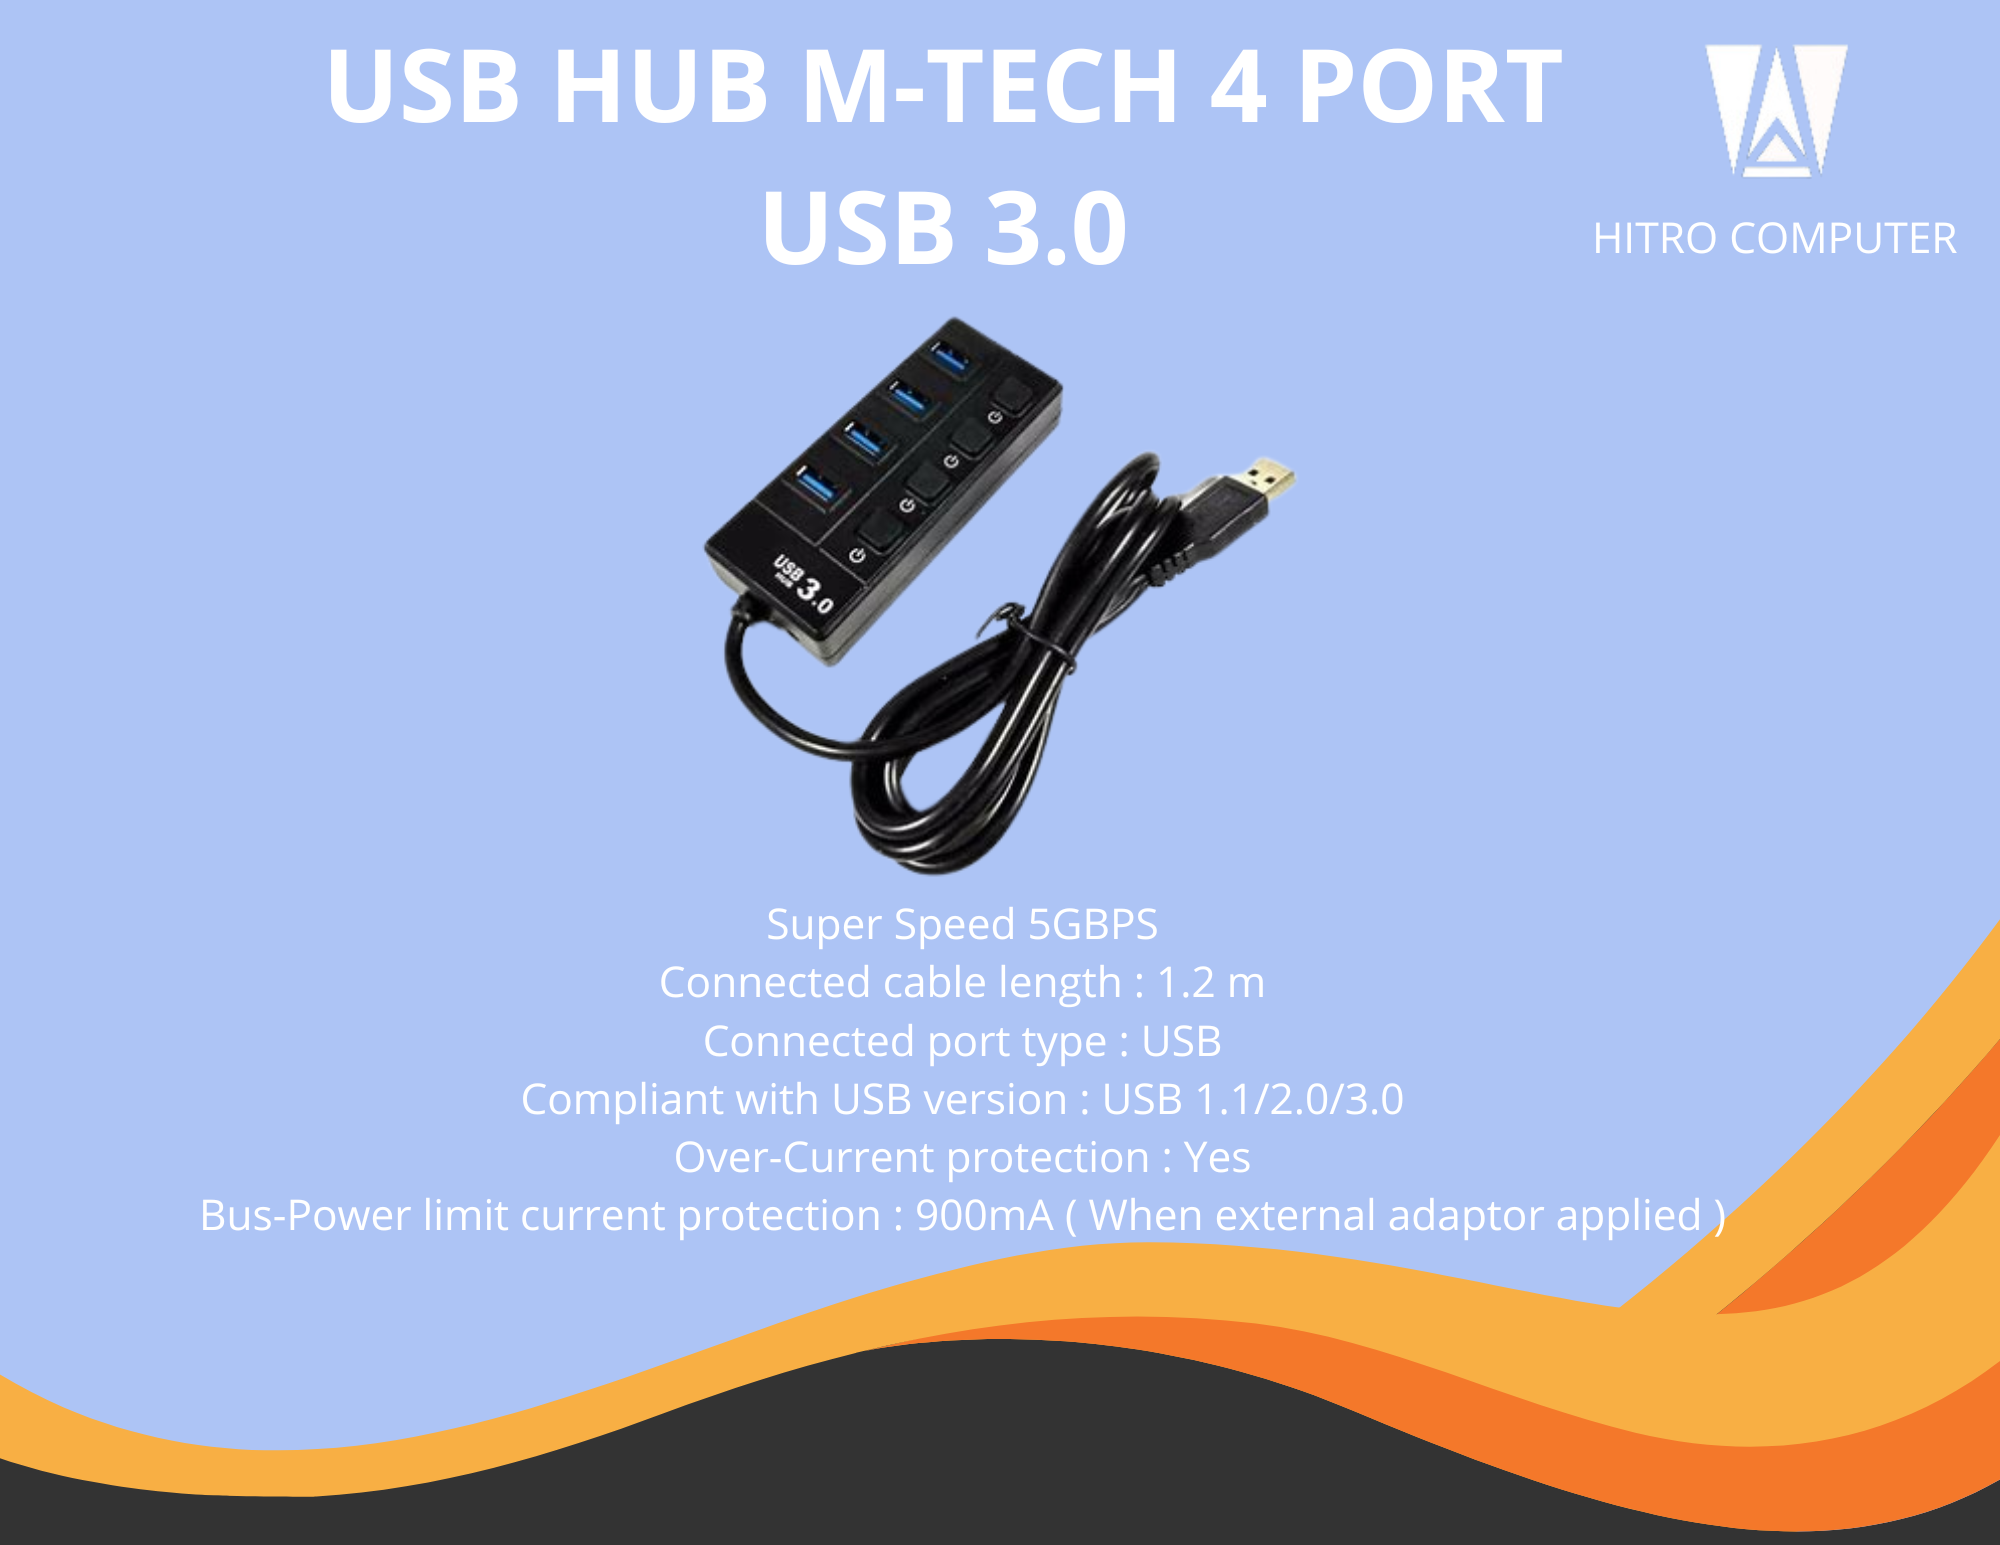 USB HUB M-TECH 4 PORT USB 3.0